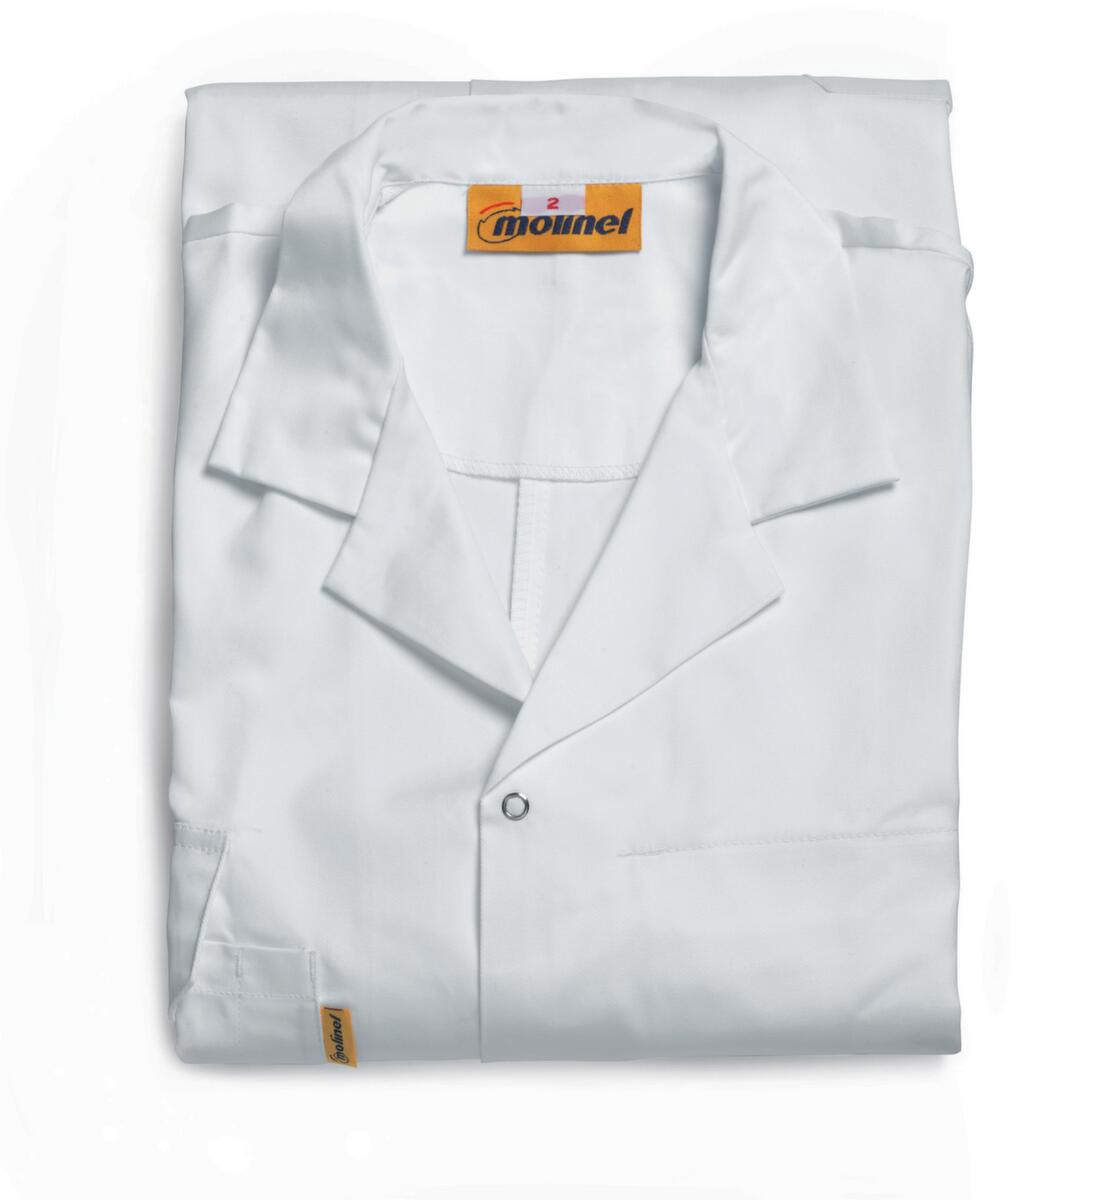 Manteau de travail pour hommes, blanc, taille 2  ZOOM